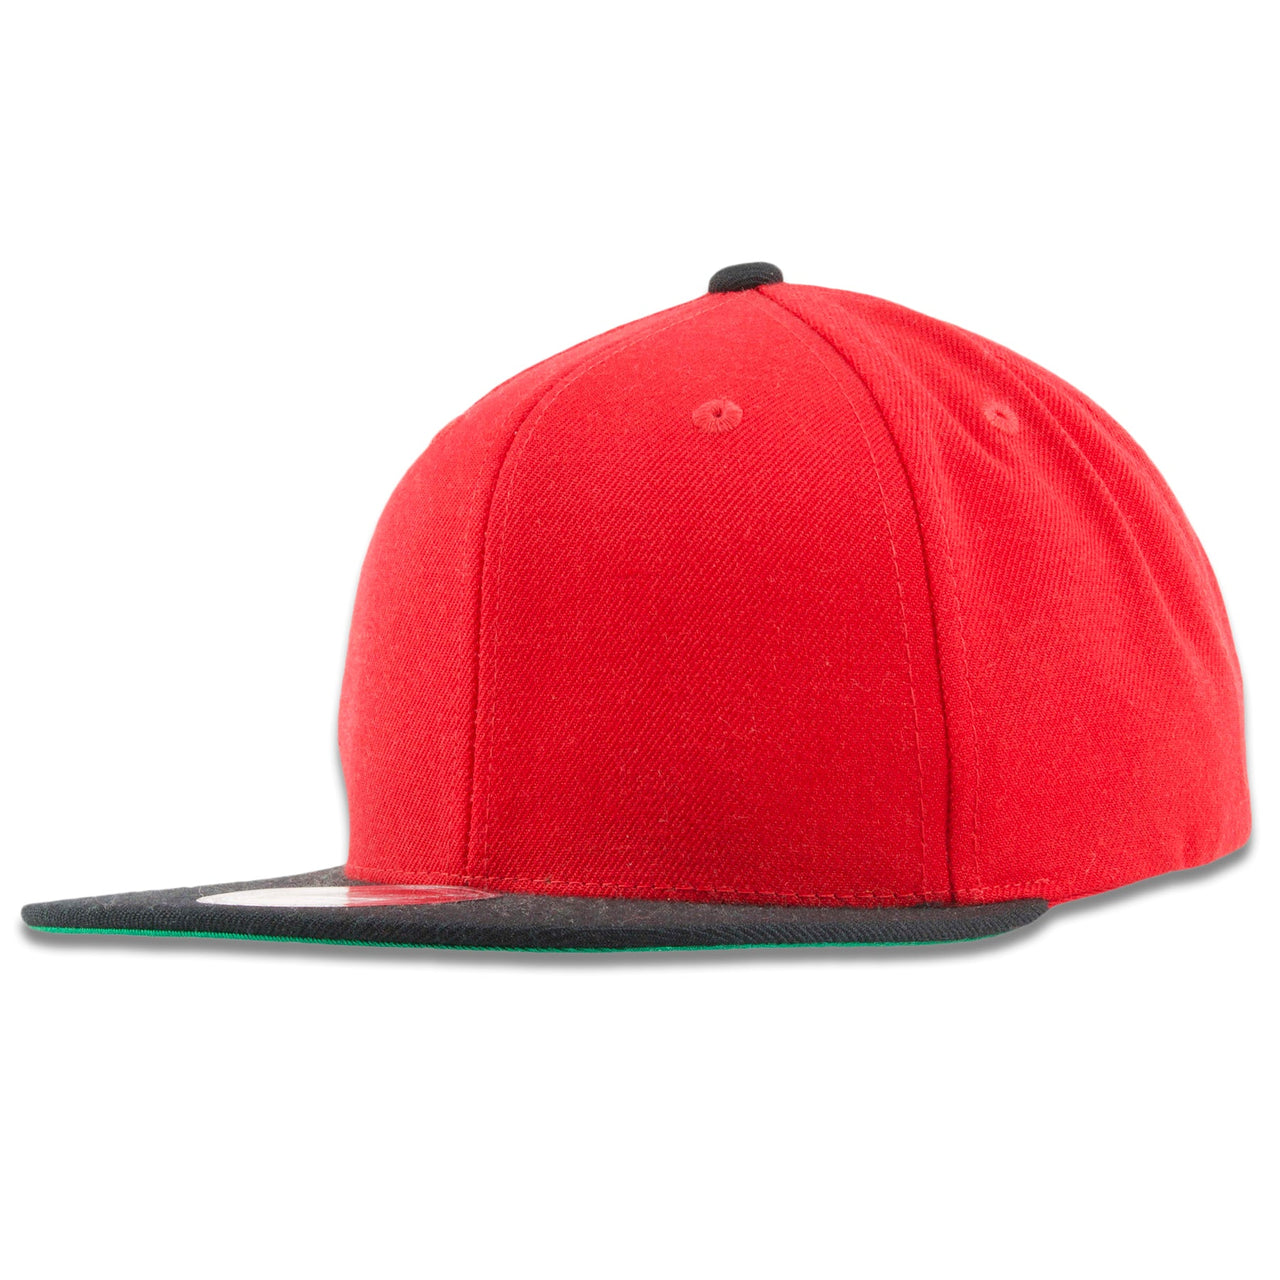 Red On Black Wool Blend Adjustable Snapback Hat